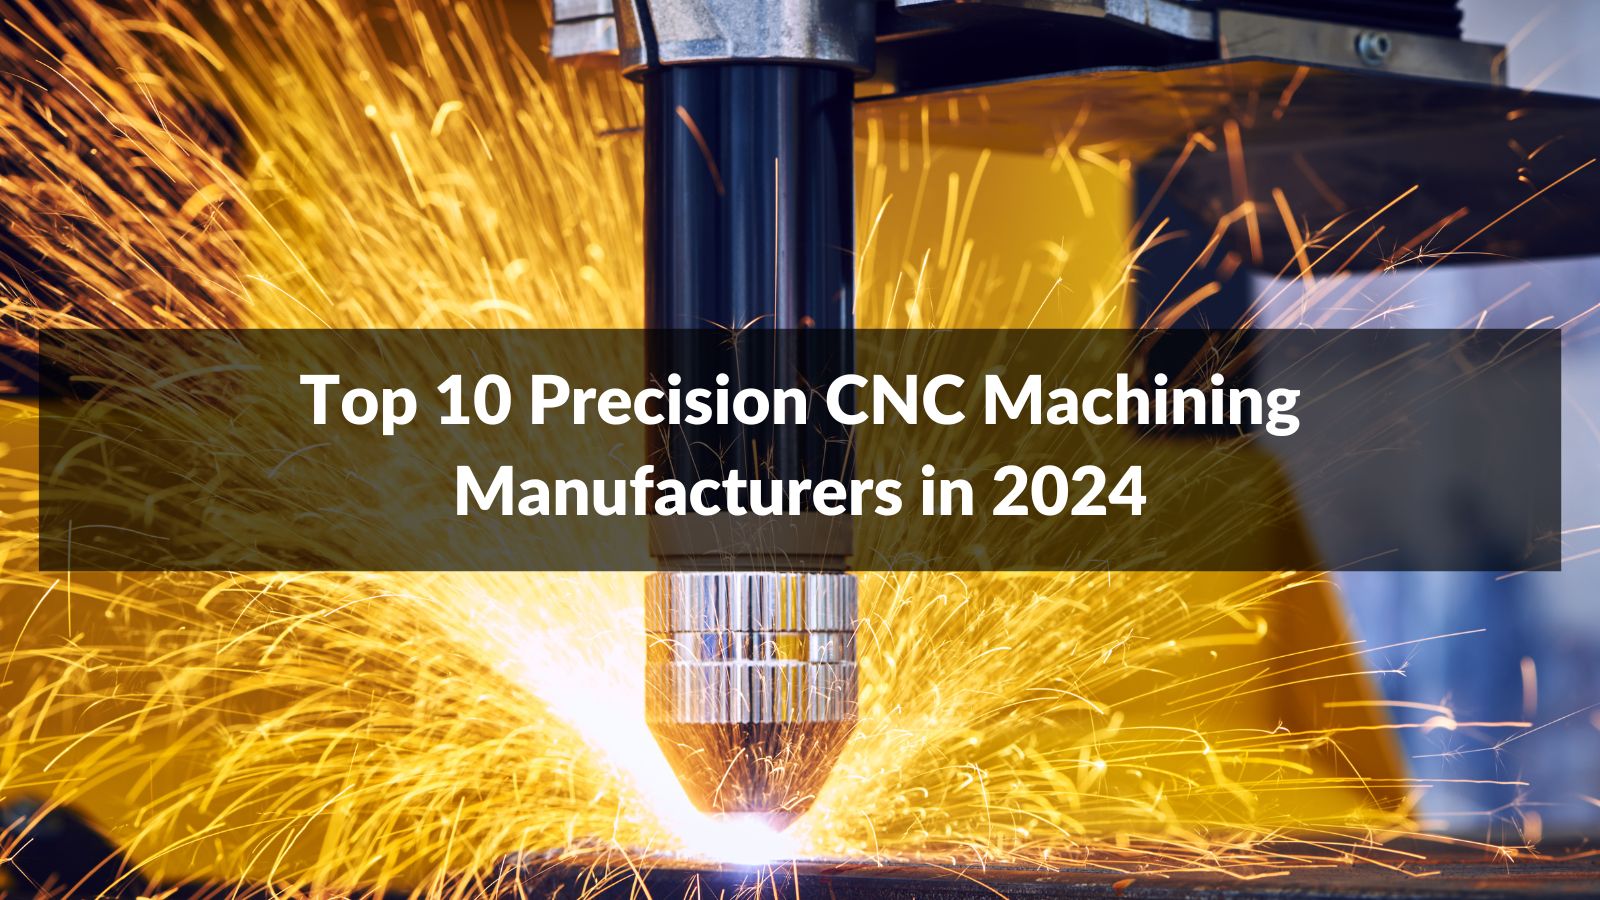 Top 10 Precision CNC Machining Manufacturers in 2024